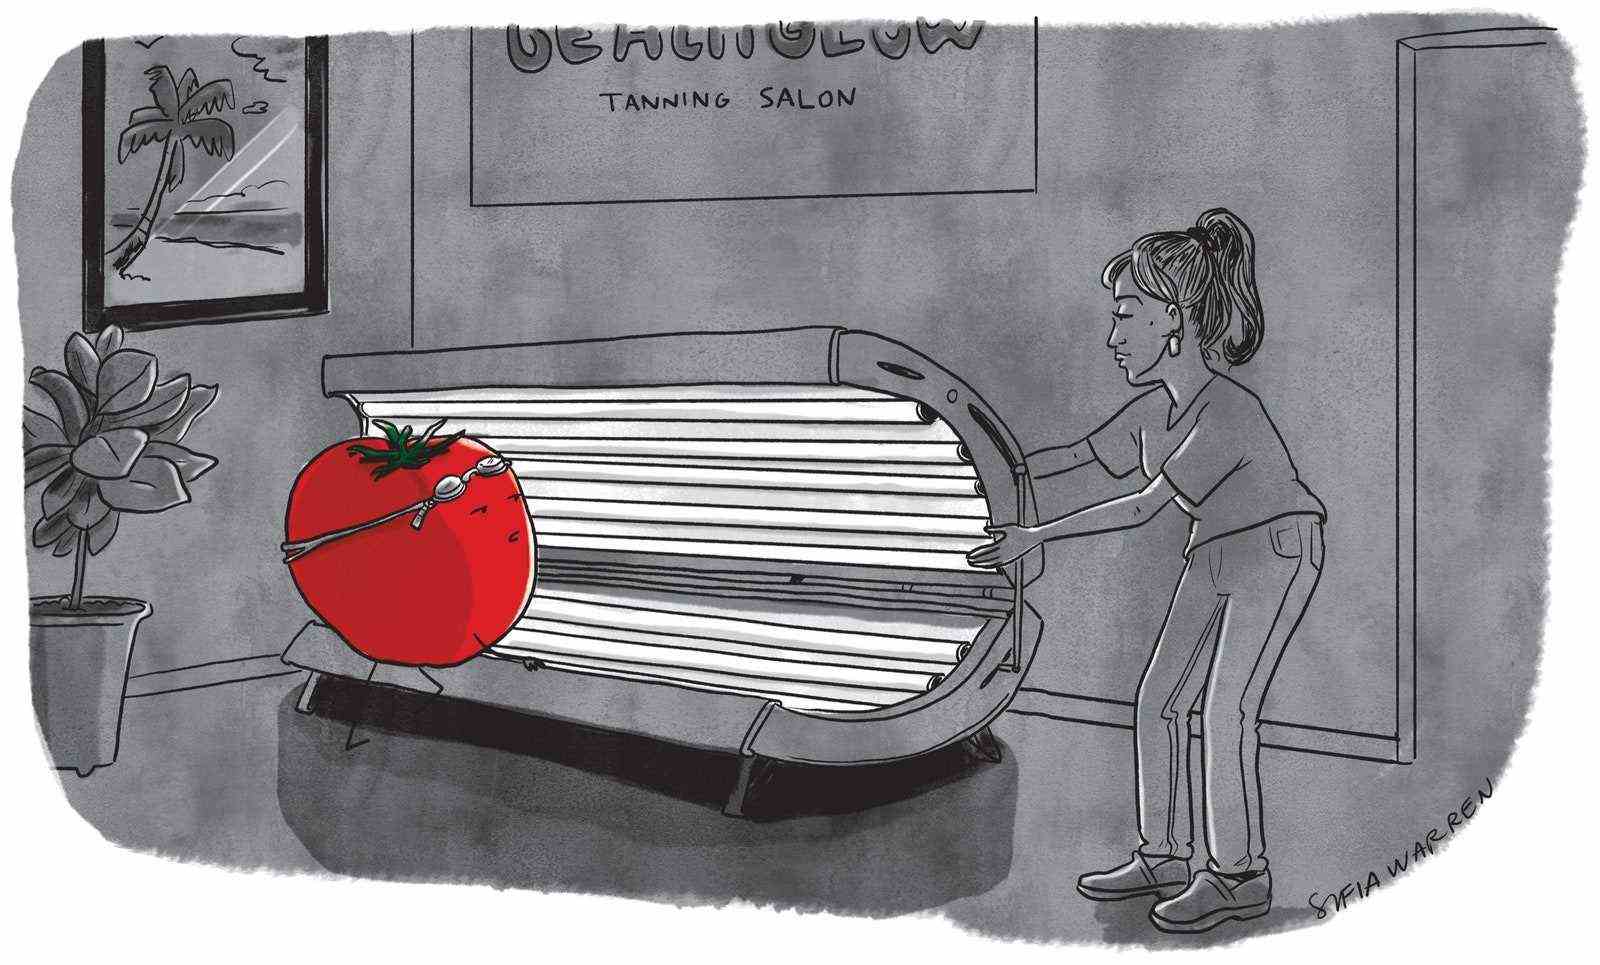 Tomate betritt Solarium in einem Salon.